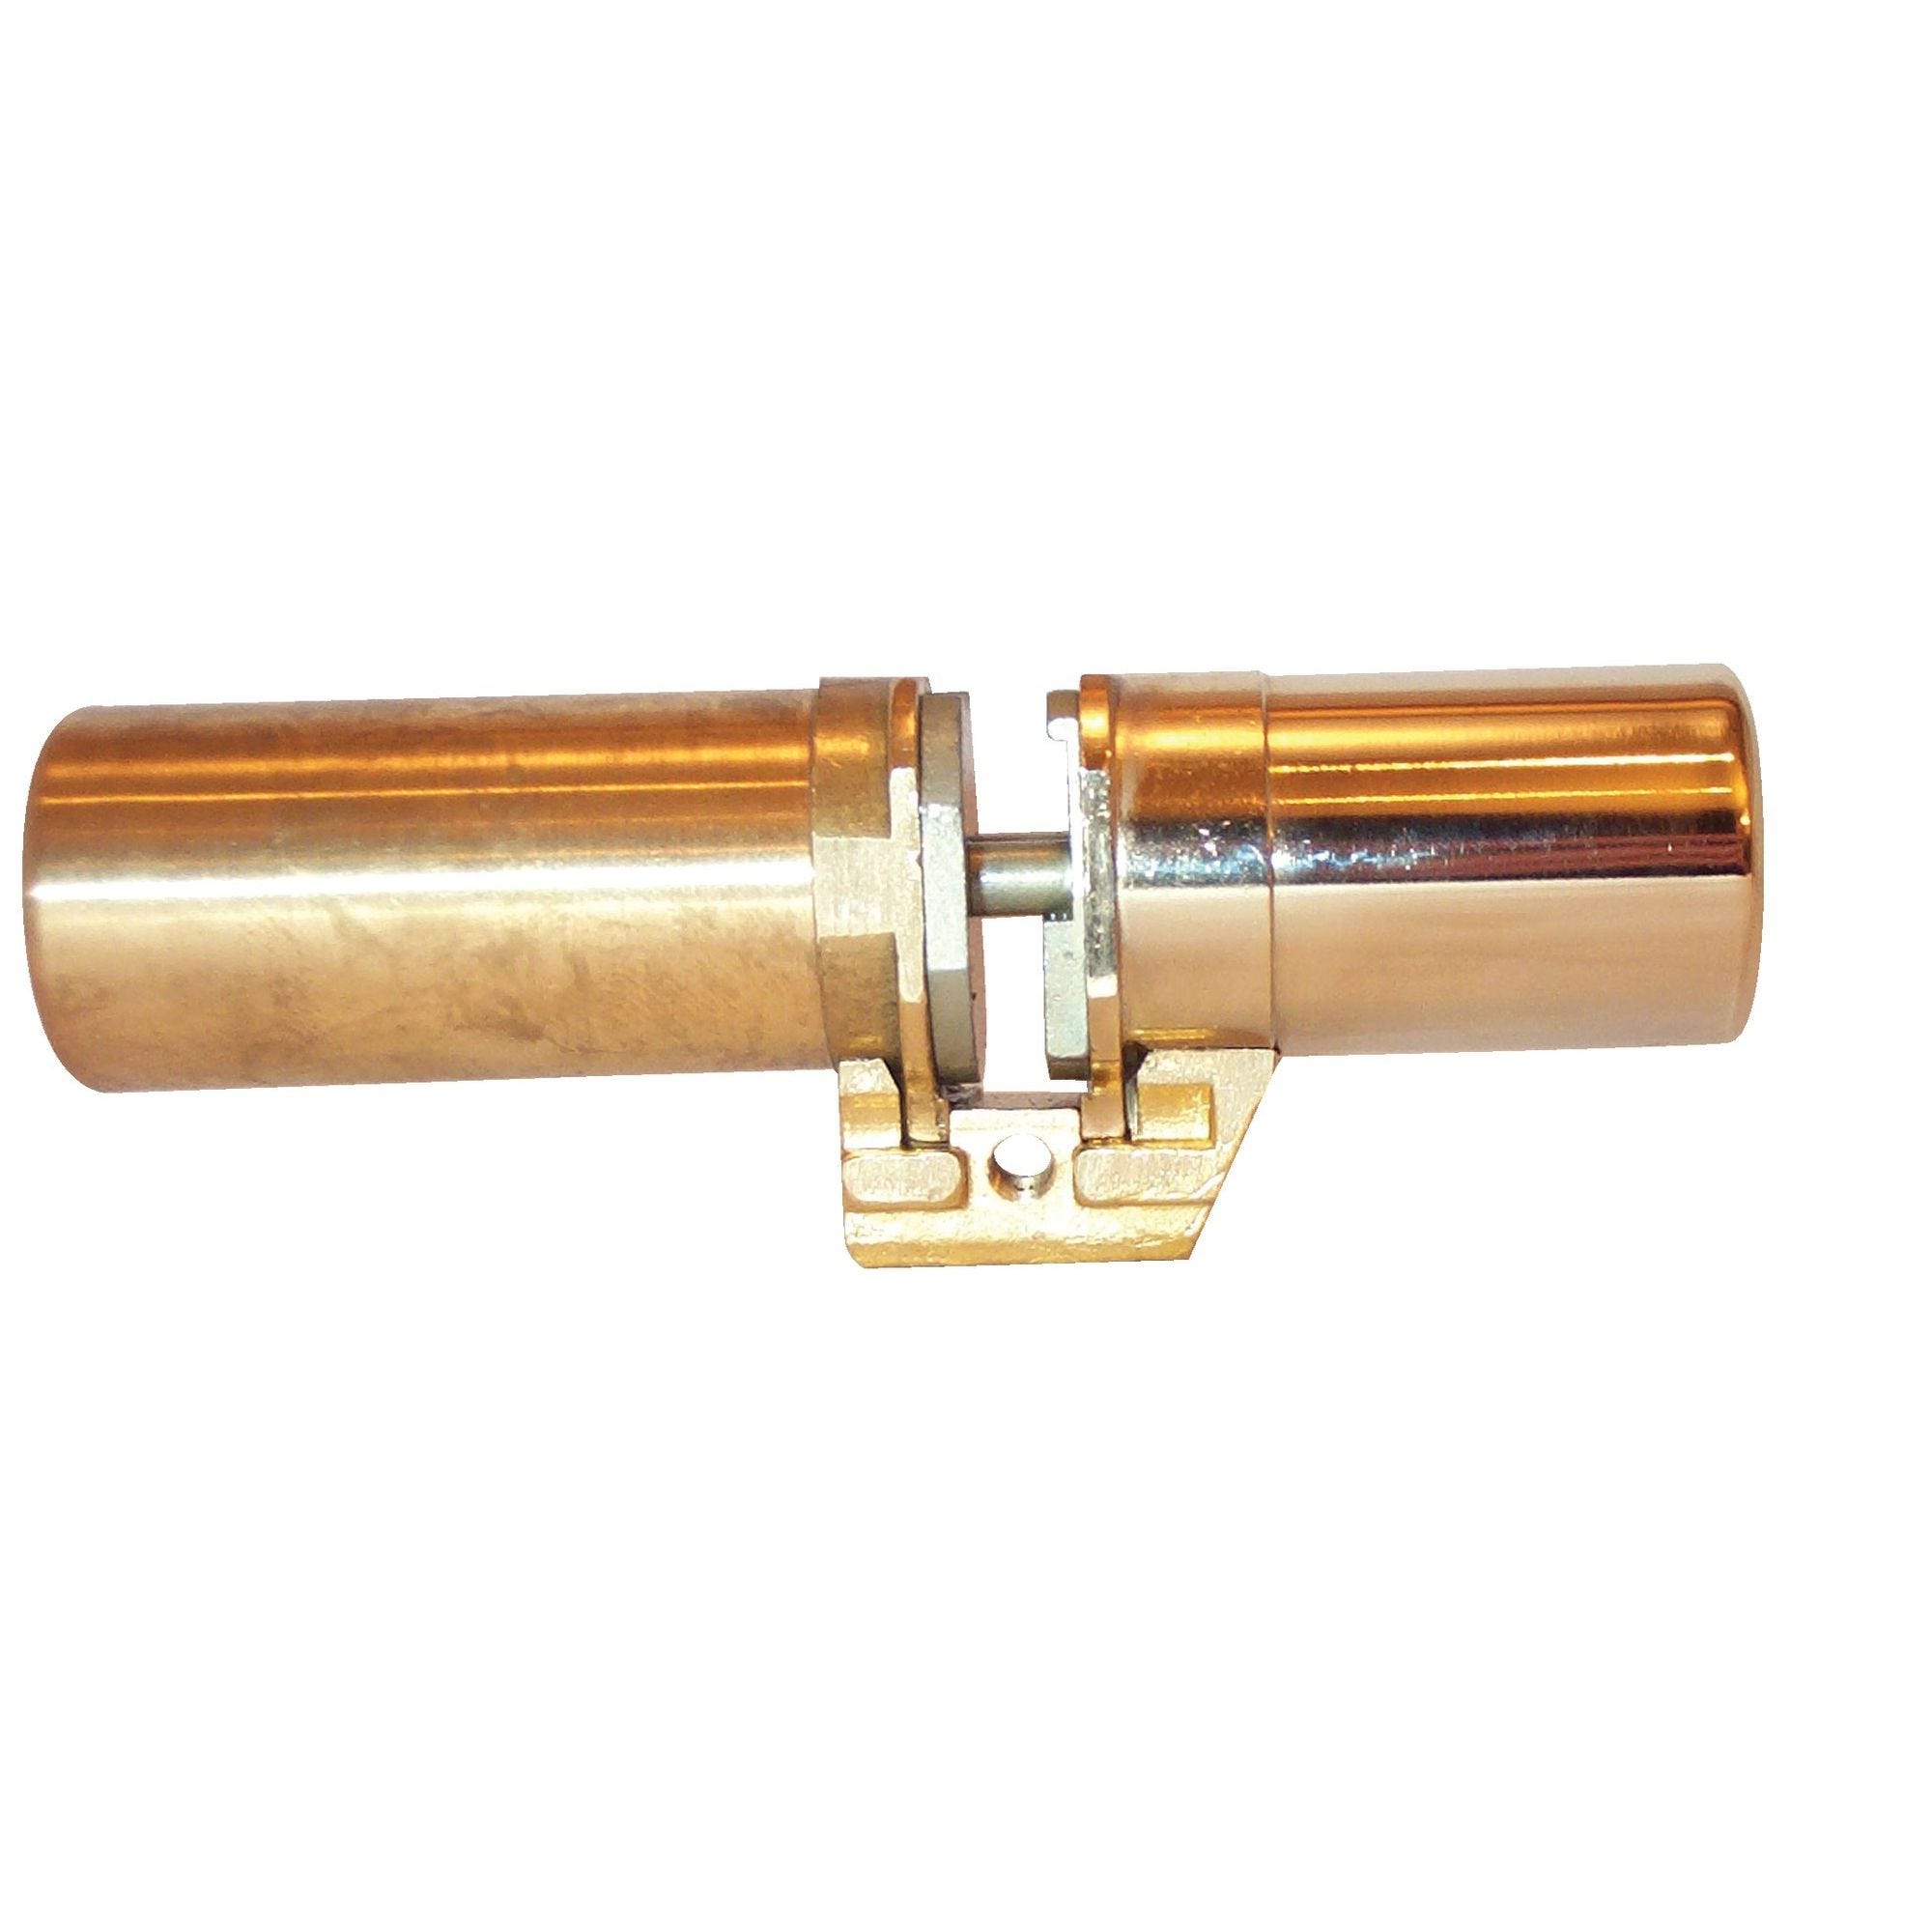 Cylindre monobloc A2P1* Vertipoint T 787 doré - FICHET - 75005720 0